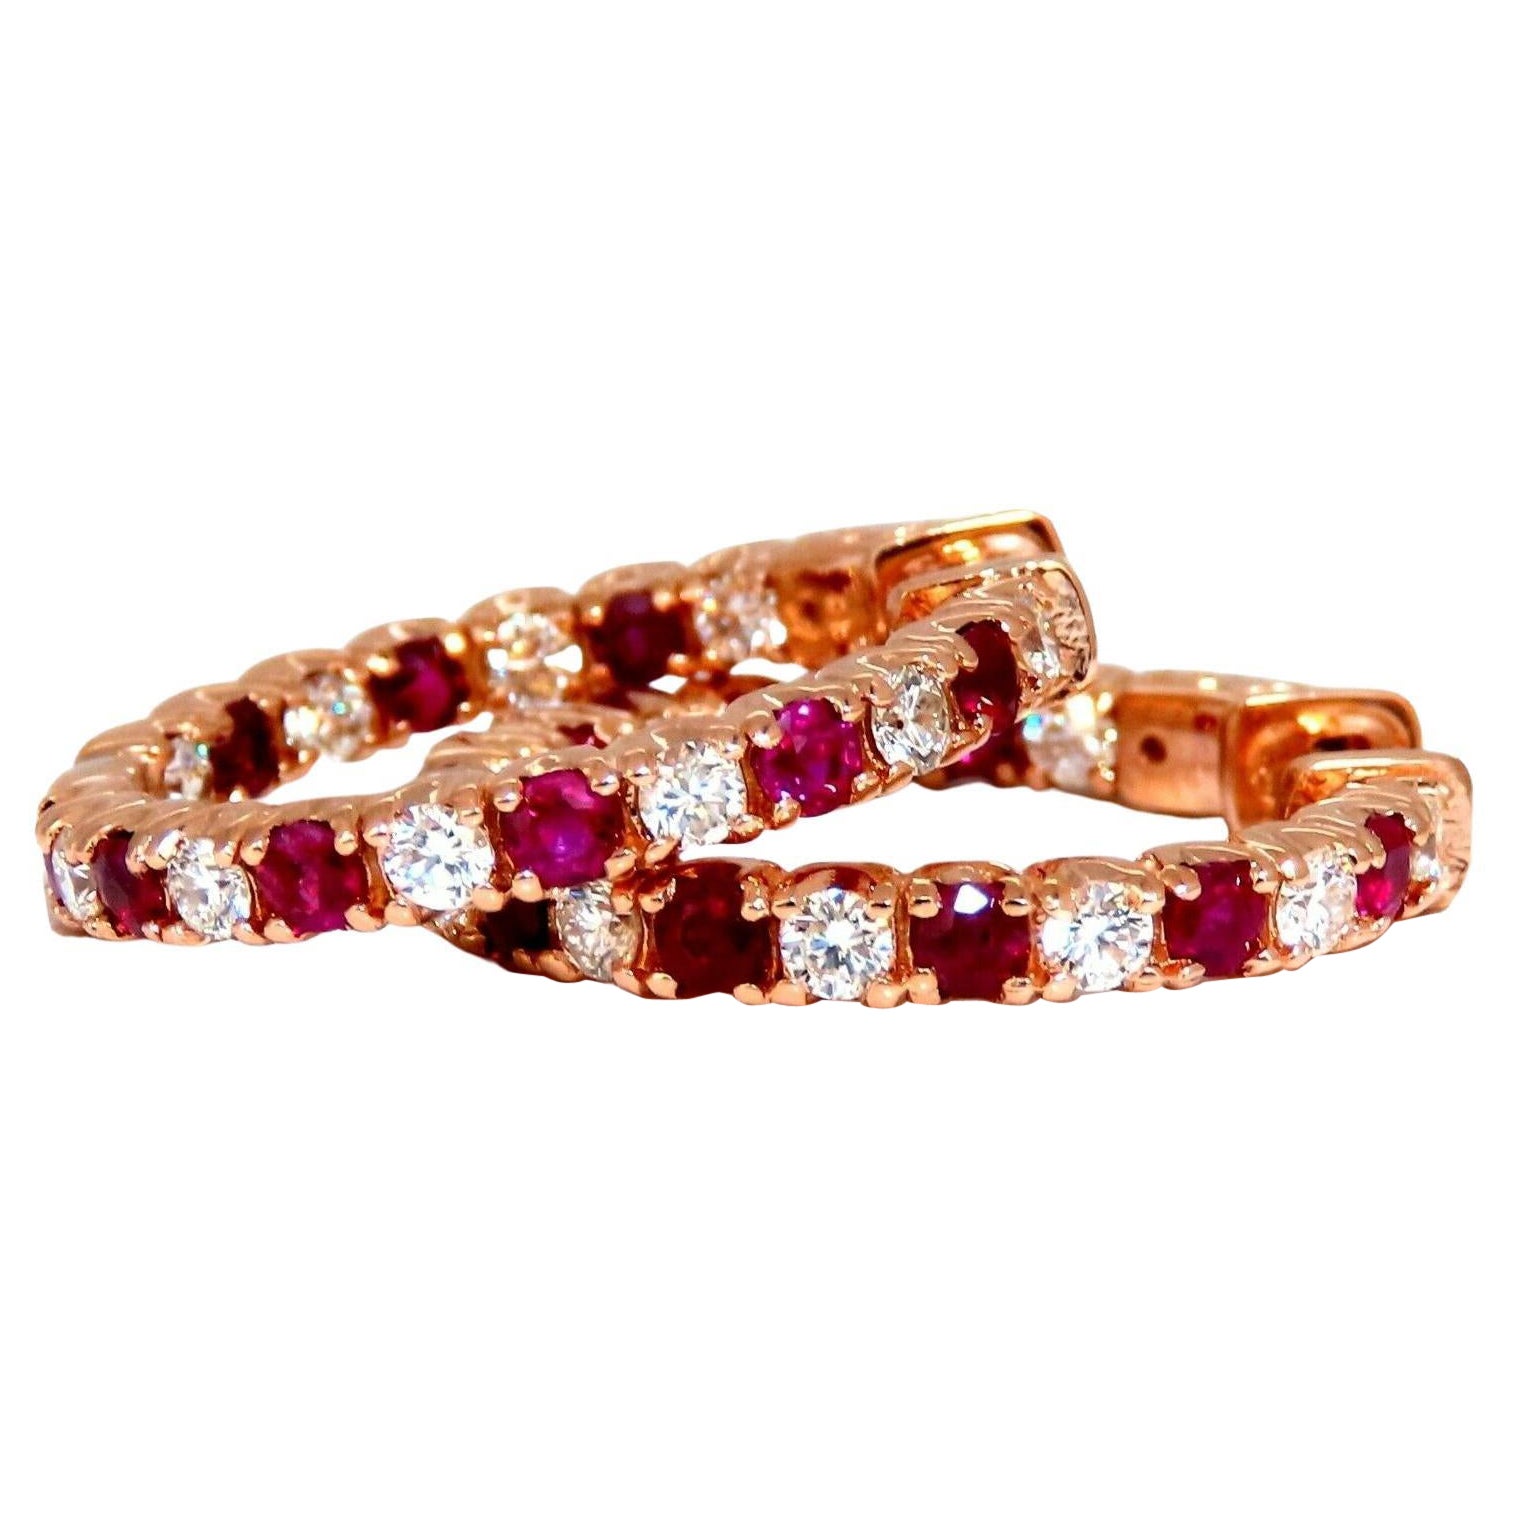 Créoles en or rose 14 carats avec diamants et rubis naturel de 3,45 carats, intérieur et extérieur